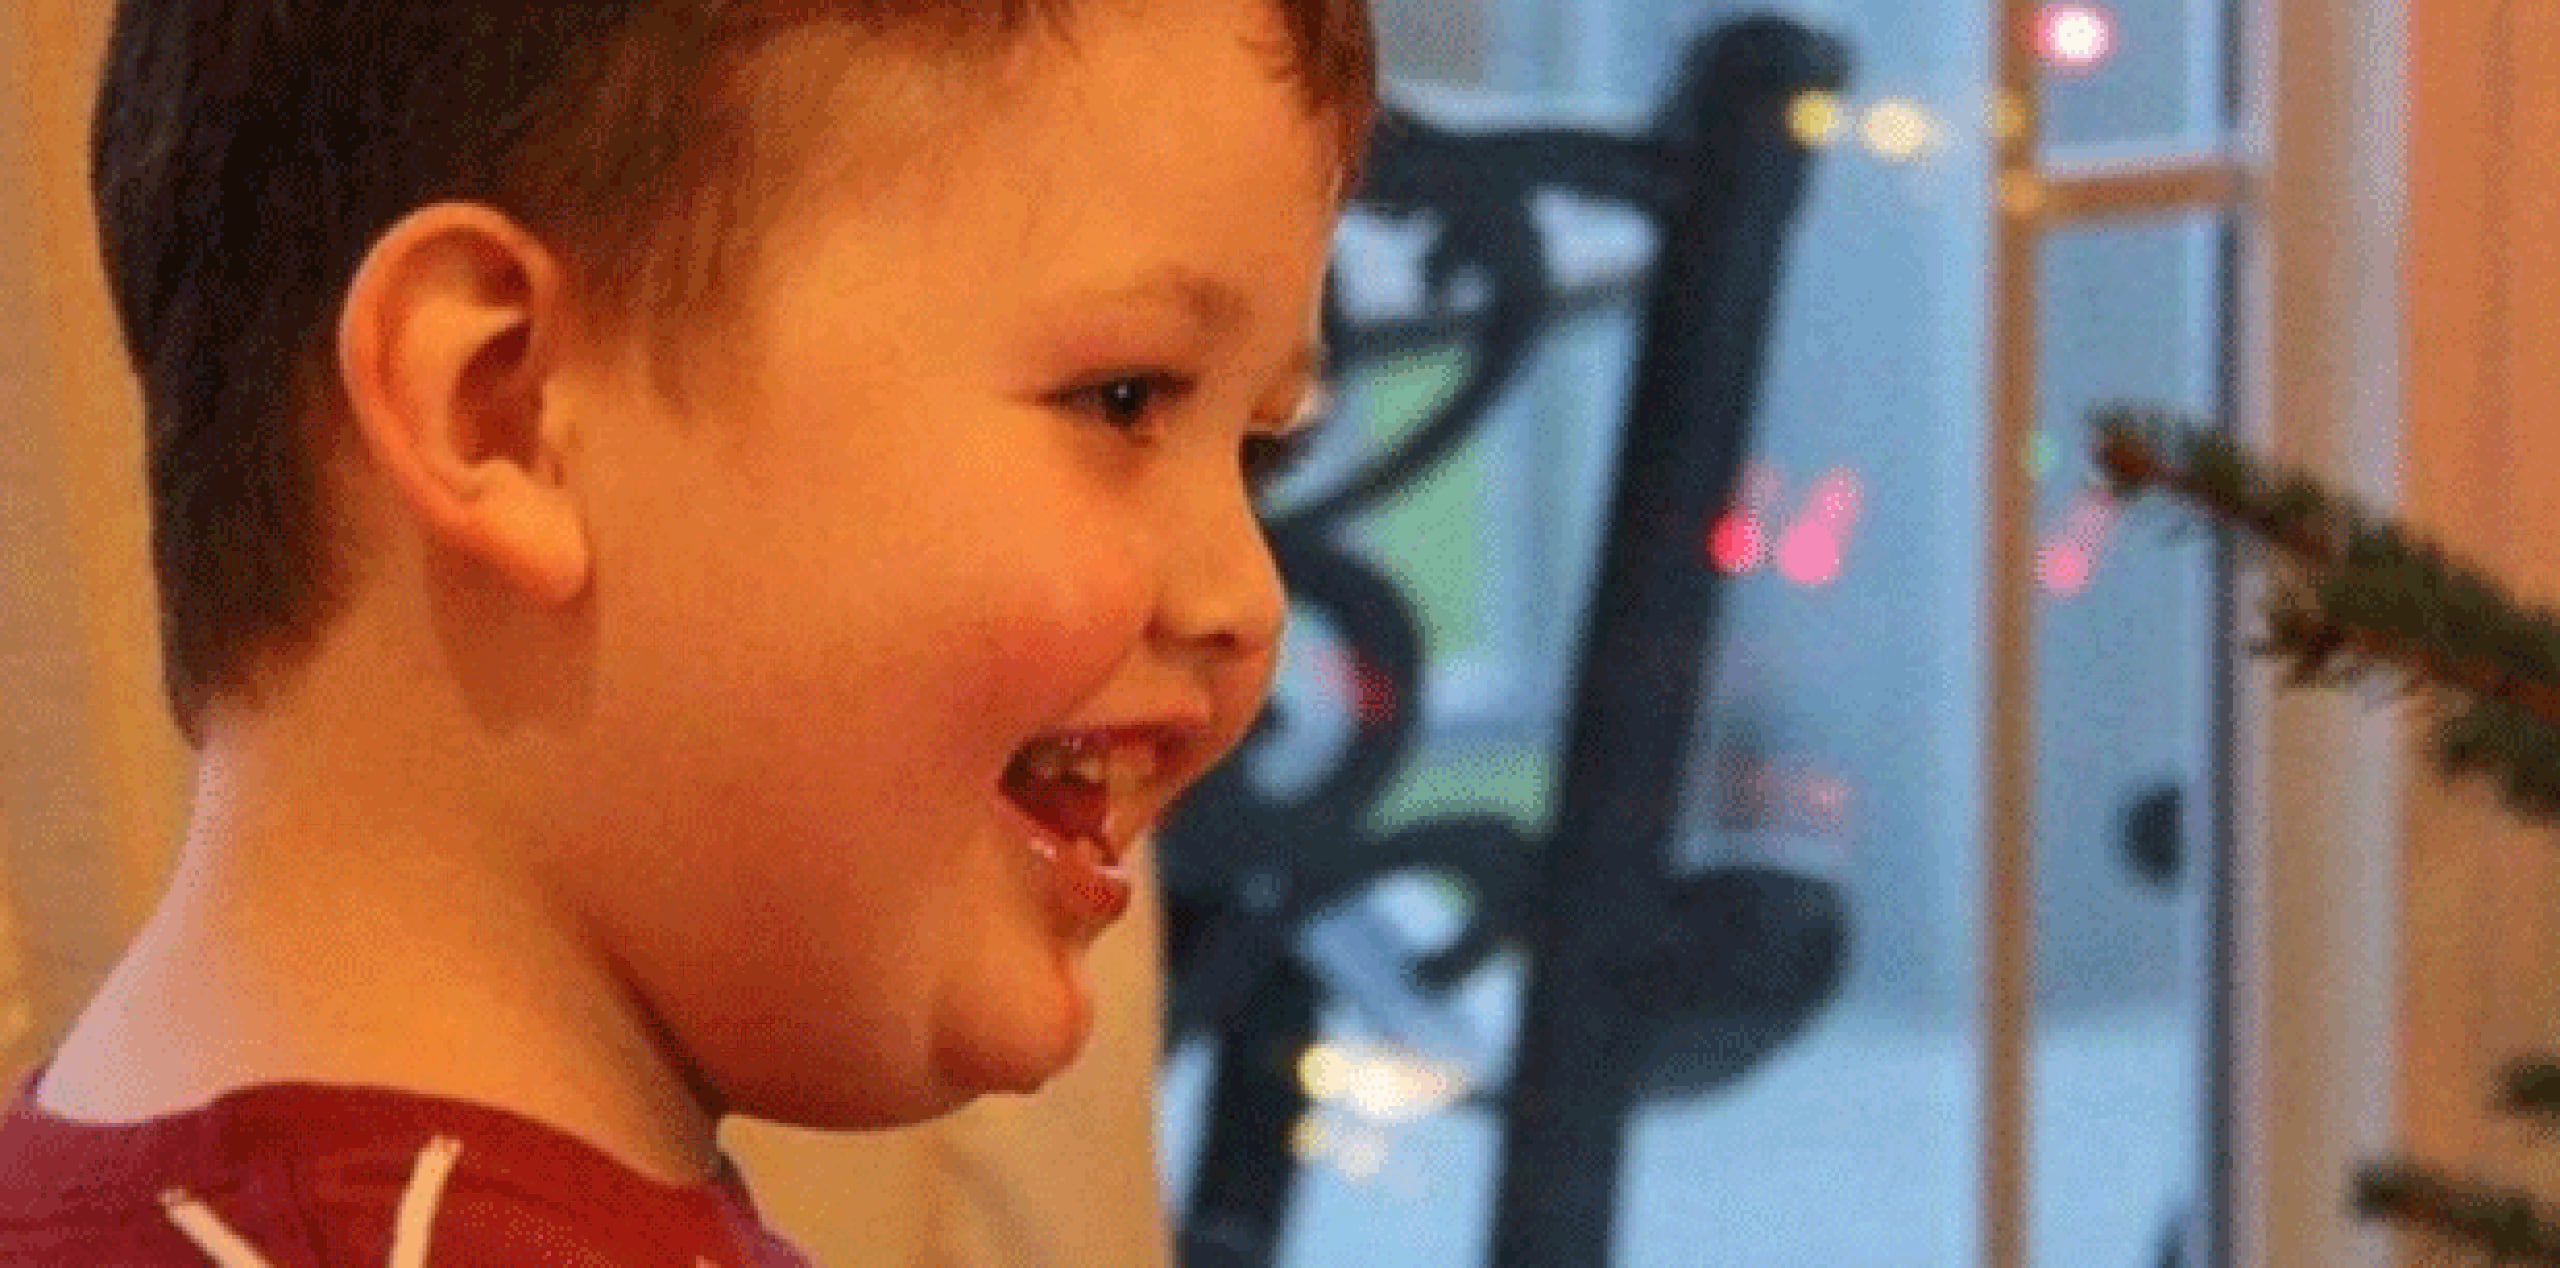 Evan Leversage, de siete años de edad, fue diagnosticado con un tumor inoperable antes de que cumpliera dos años de edad. (abcnews)